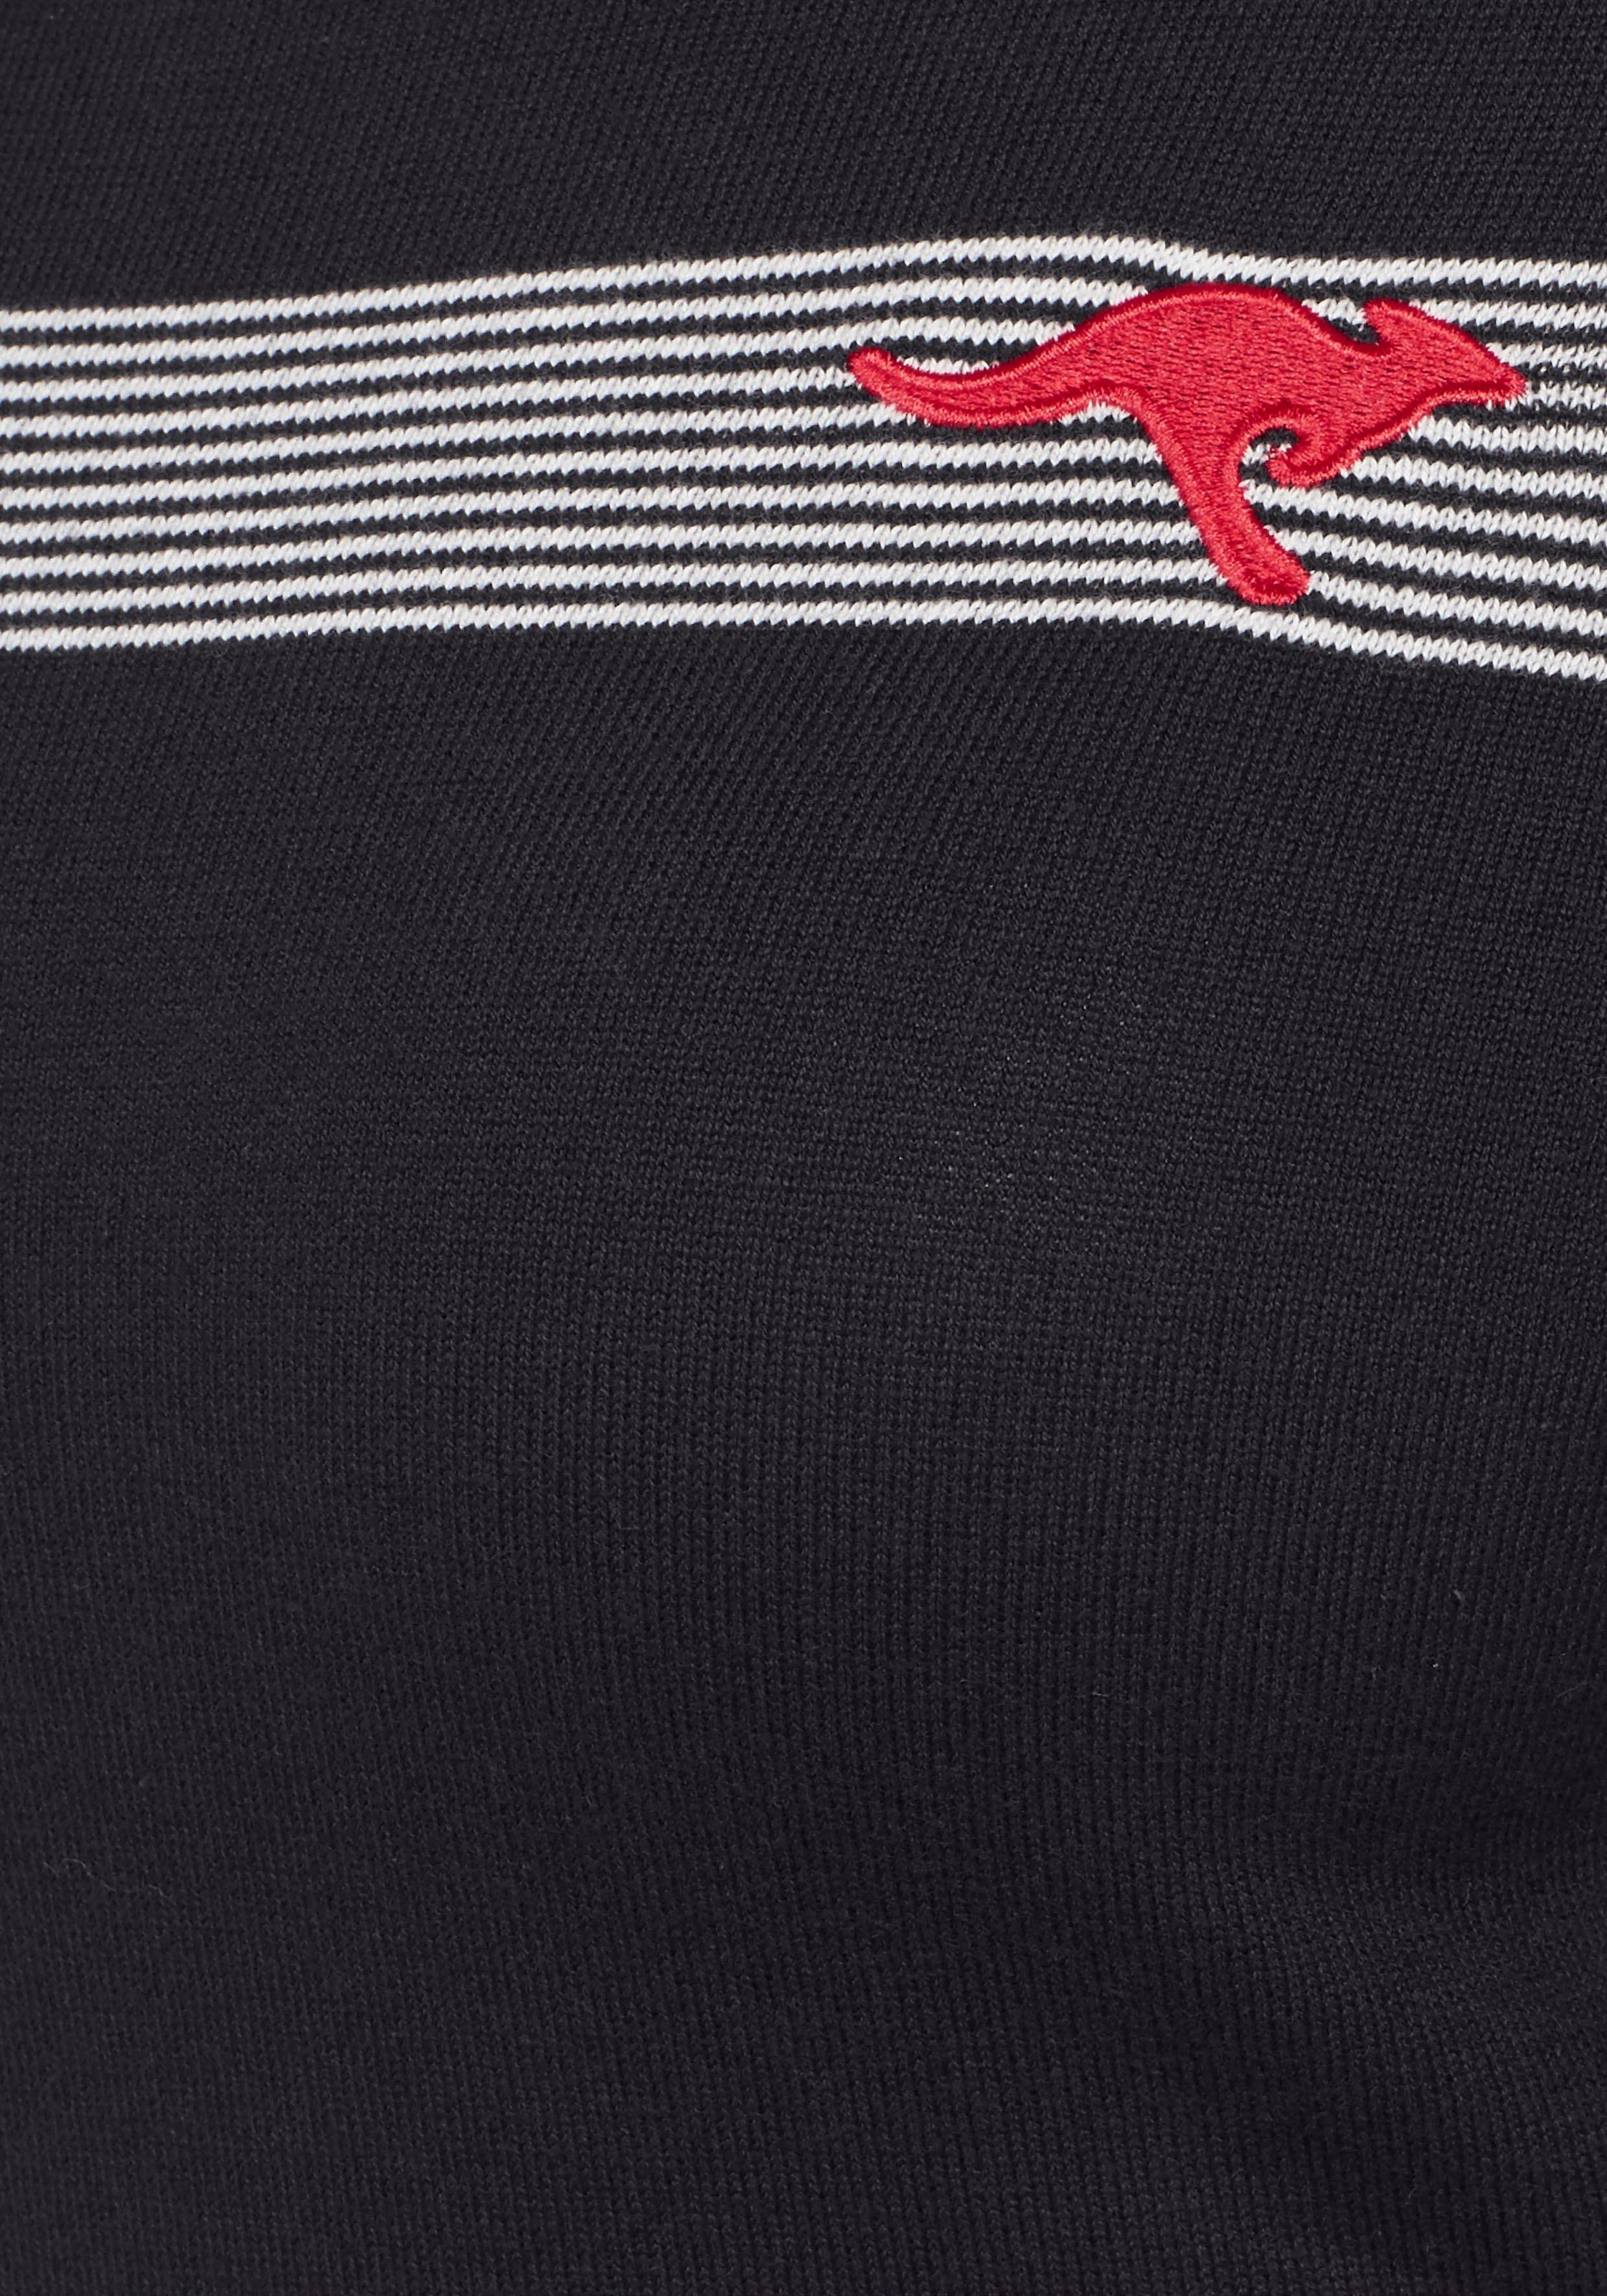 KangaROOS Strickkleid, mit Streifen-Details im Color Blocking Style